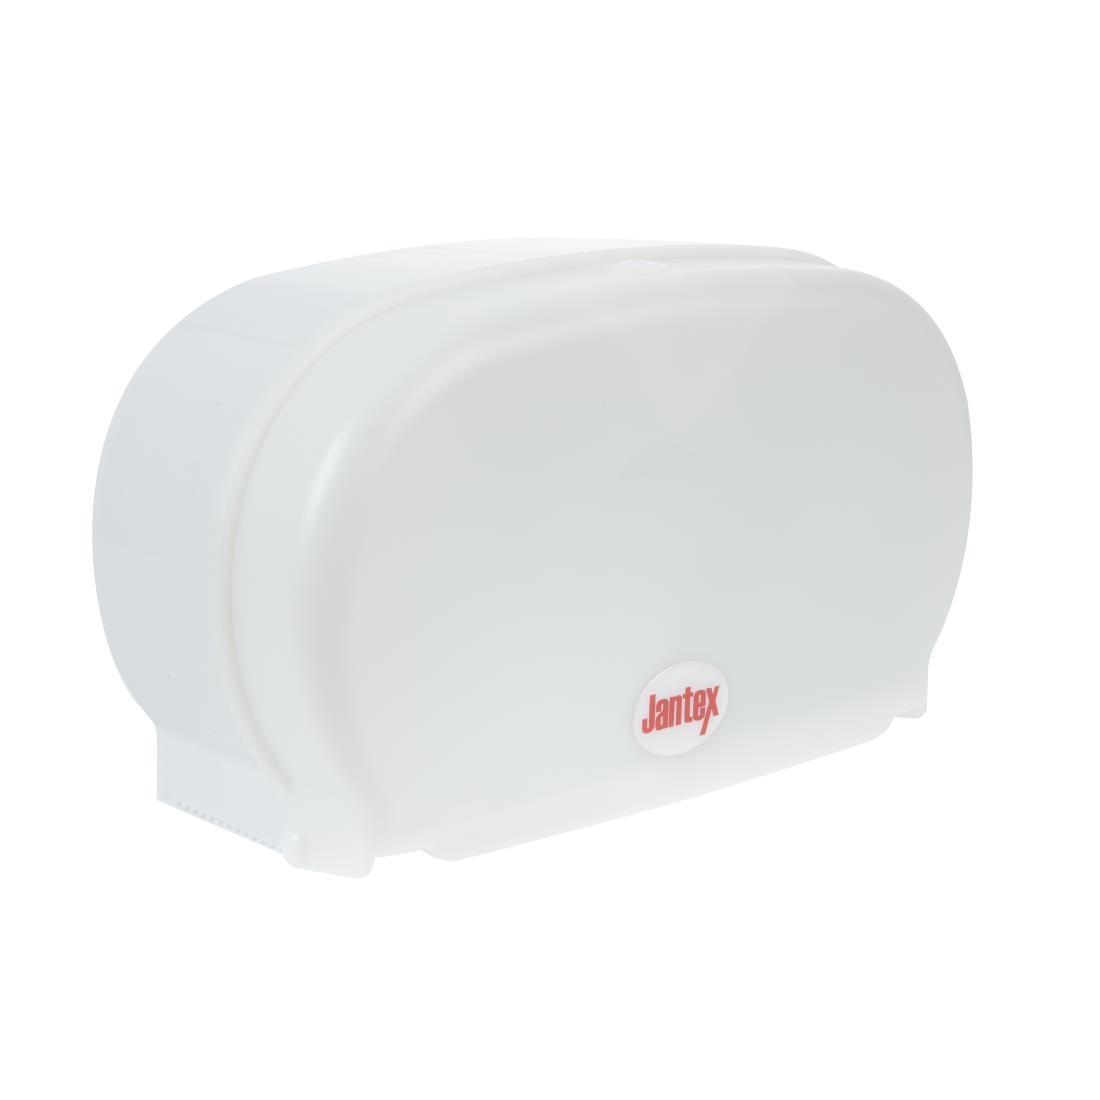 Jantex Micro Twin Toilet Roll Dispenser - GL062  - 1